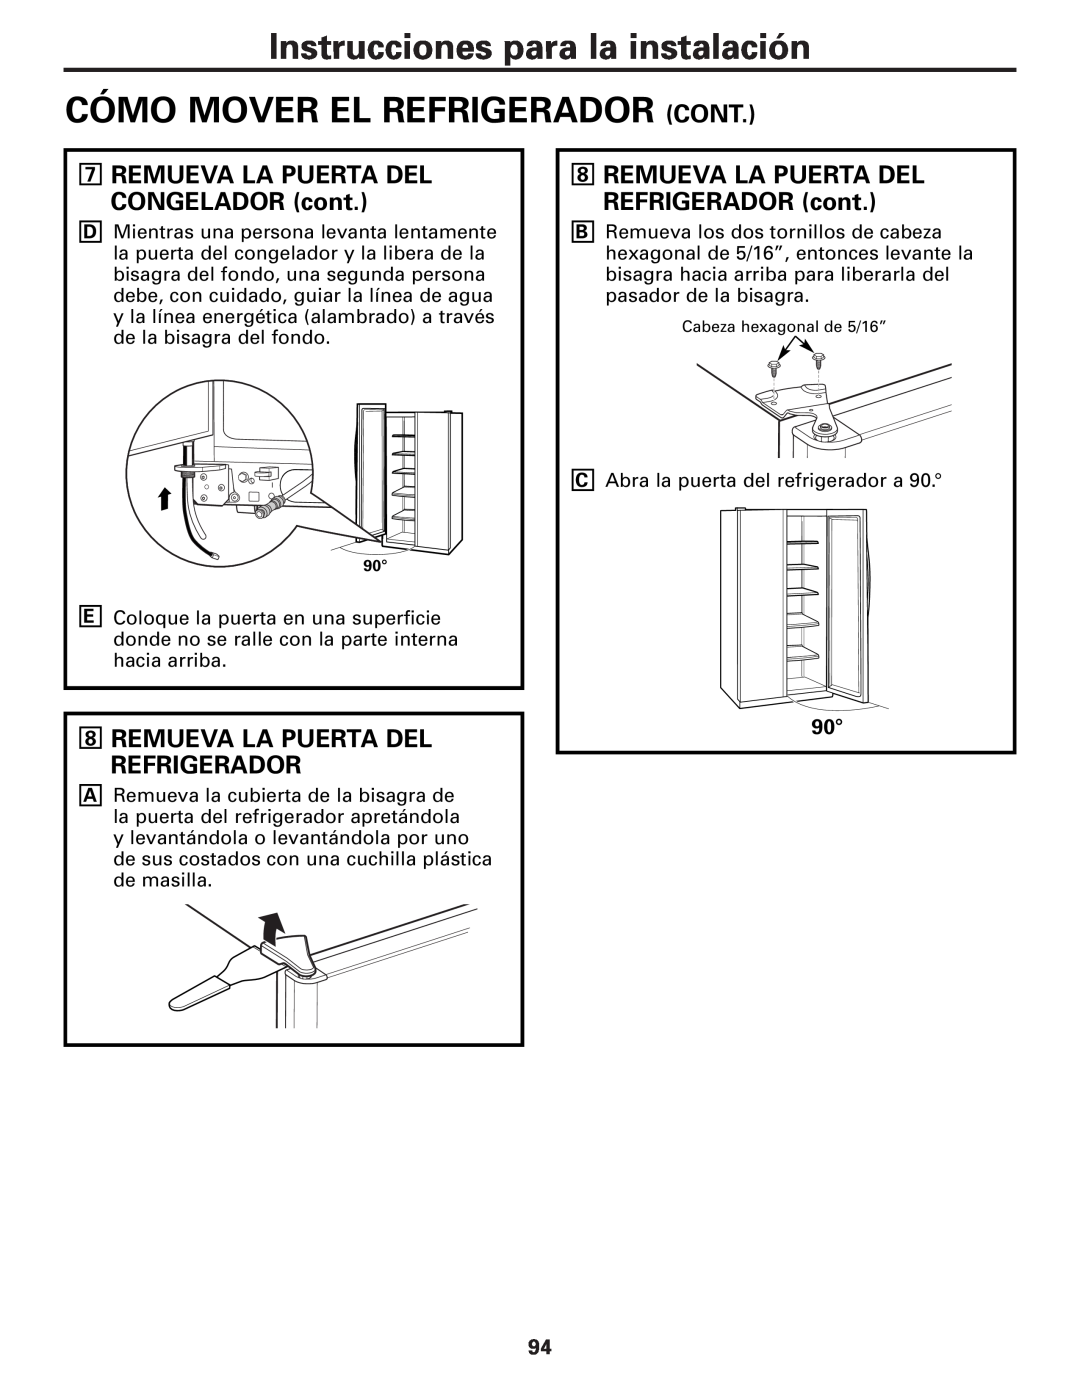 GE MODELS 23 AND 25 Instrucciones para la instalación CÓMO MOVER EL REFRIGERADOR CONT, Remueva La Puerta Del Refrigerador 